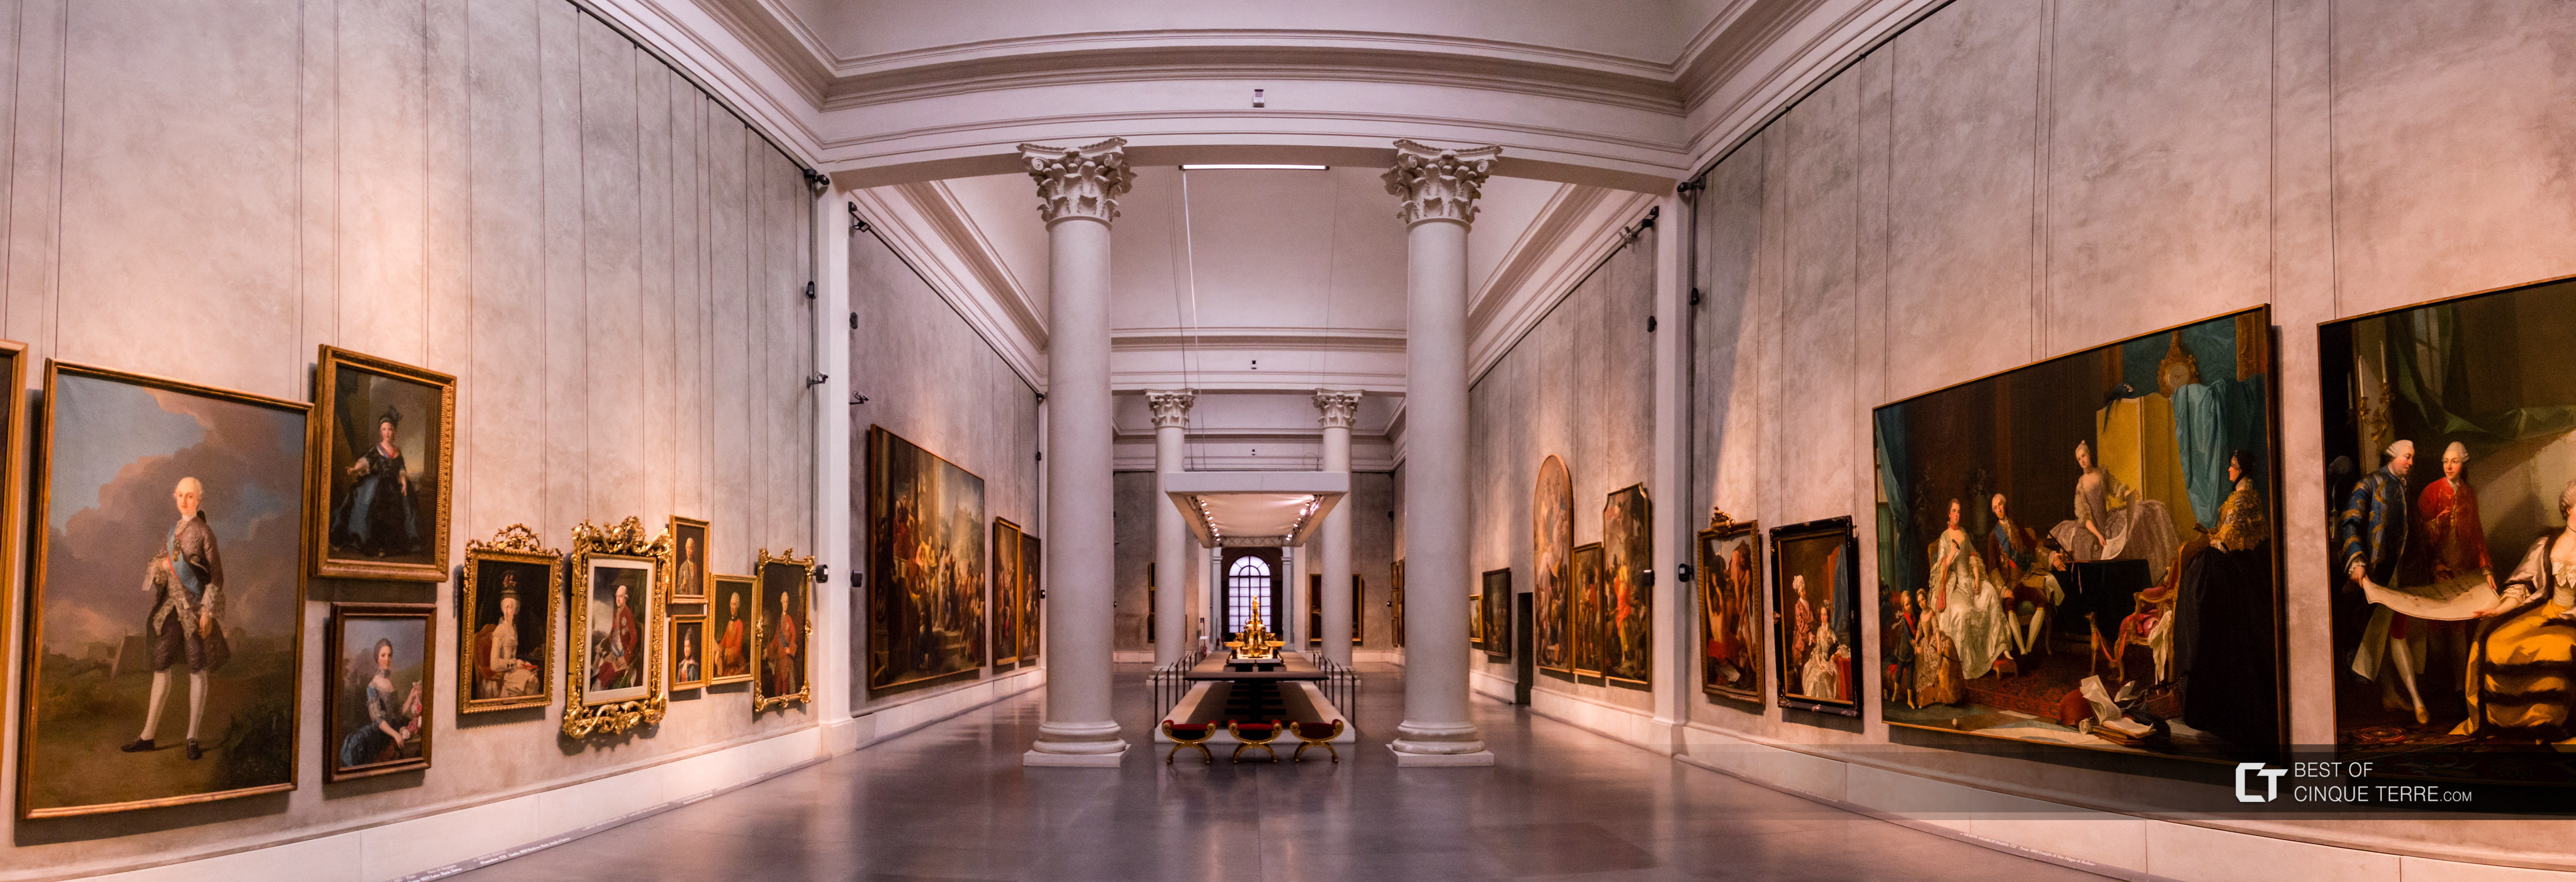 Национальная галерея, Парма, Италия